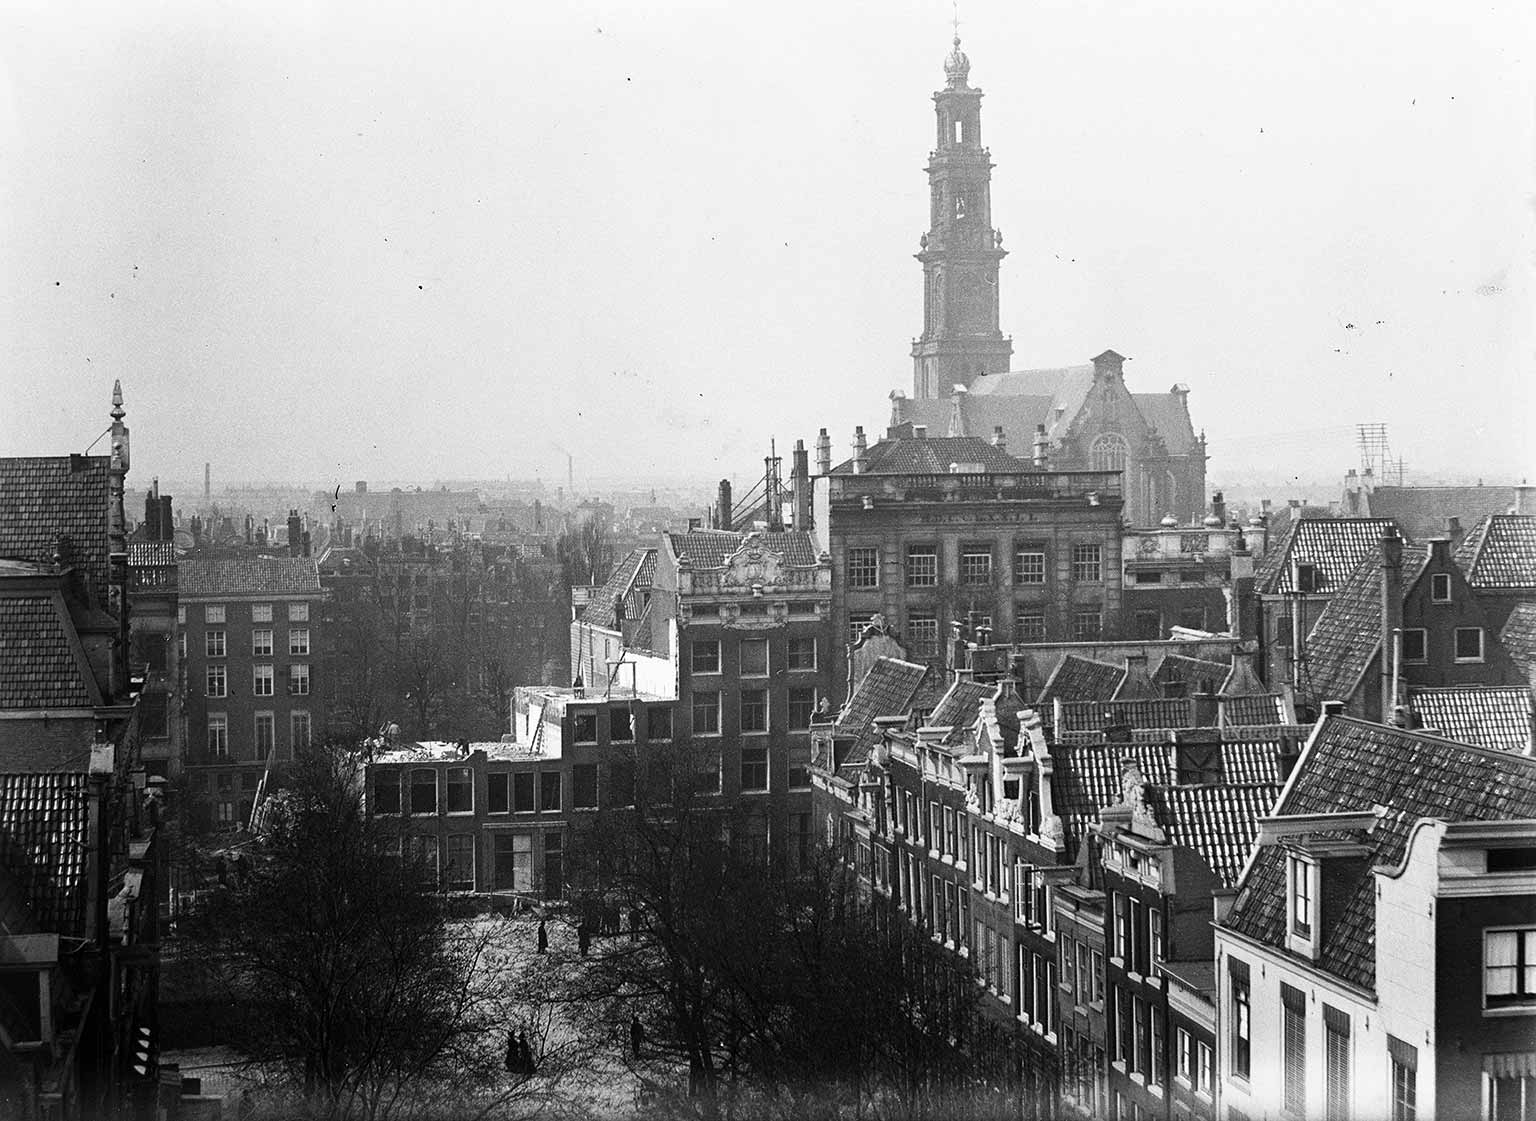 Amsterdam 1896, de Warmoesgracht gedempt en afbraak van panden op de Herengracht